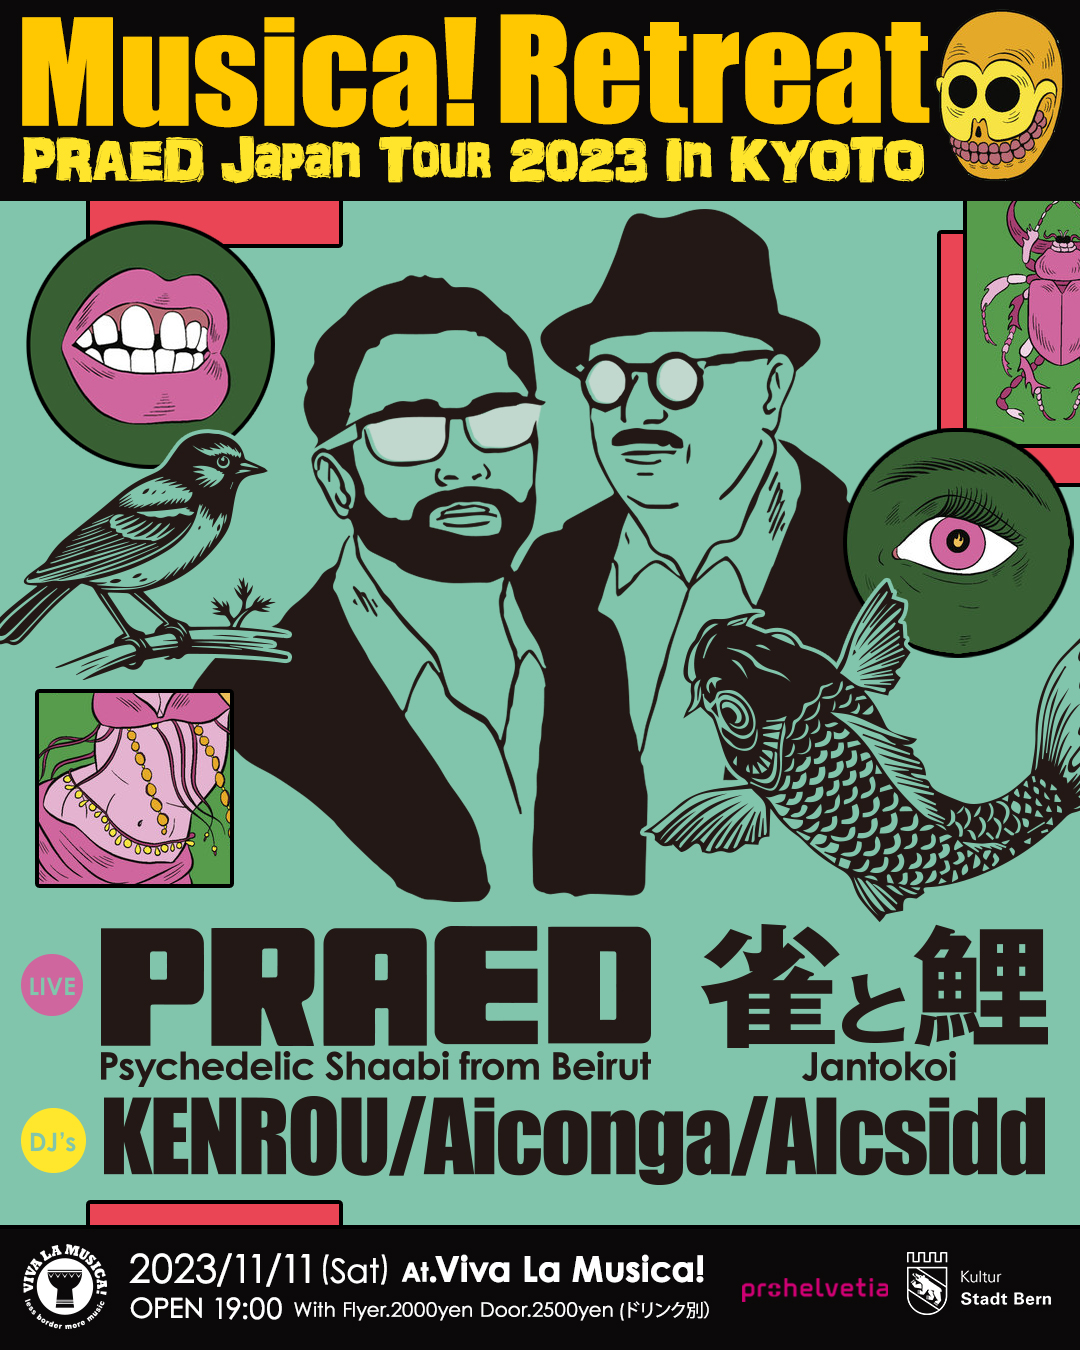 PRAED Japan Tour 2023 in KYOTO